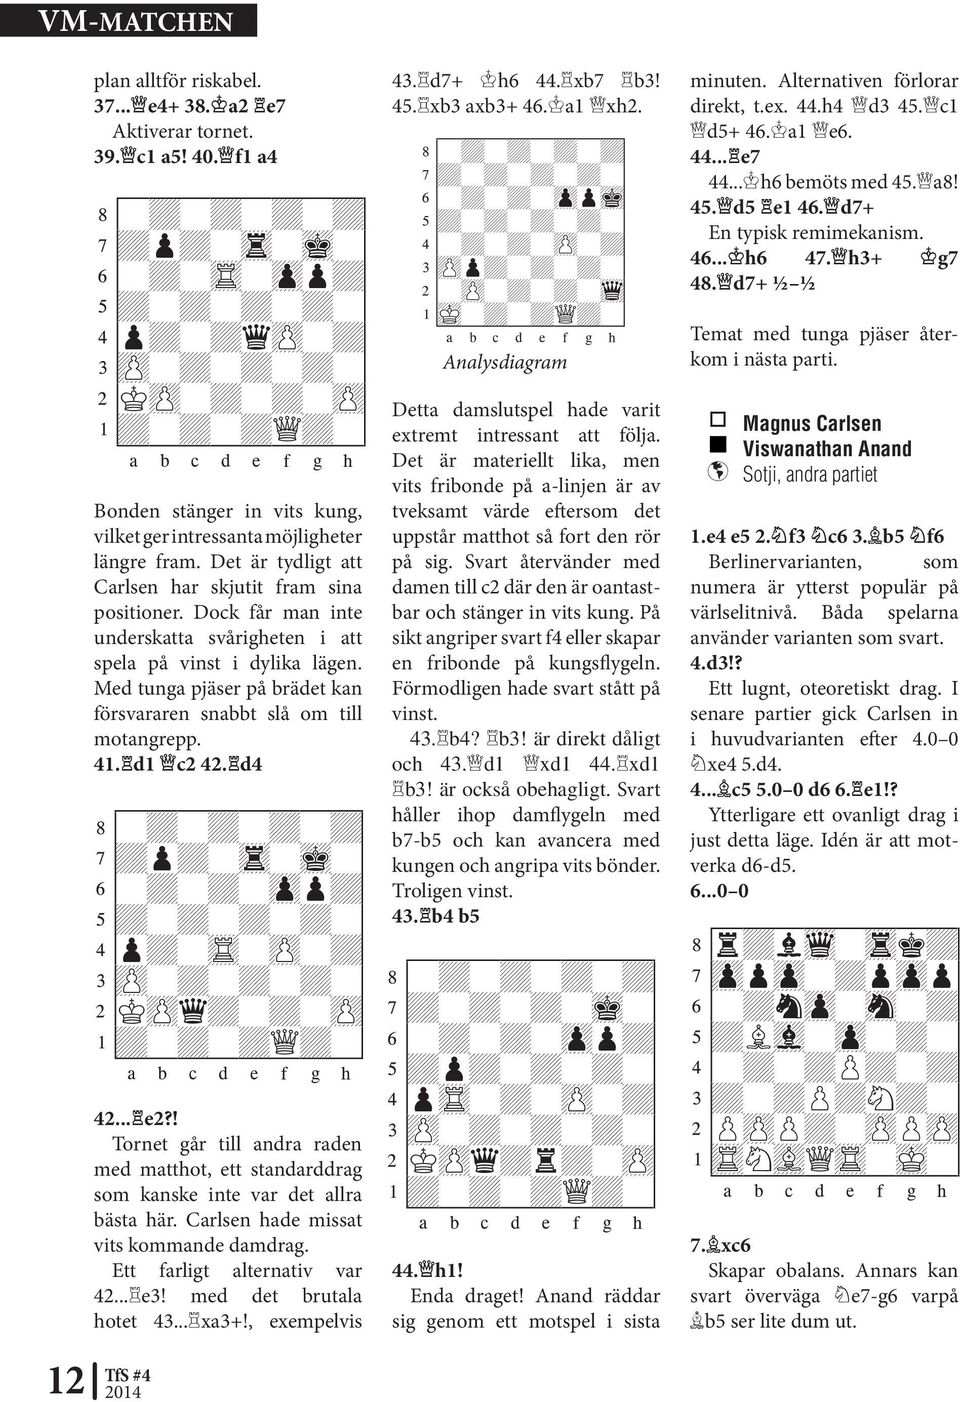 Det är tydligt att Carlsen har skjutit fram sina positioner. Dock får man inte under skatta svårigheten i att spela på vinst i dylika lägen.